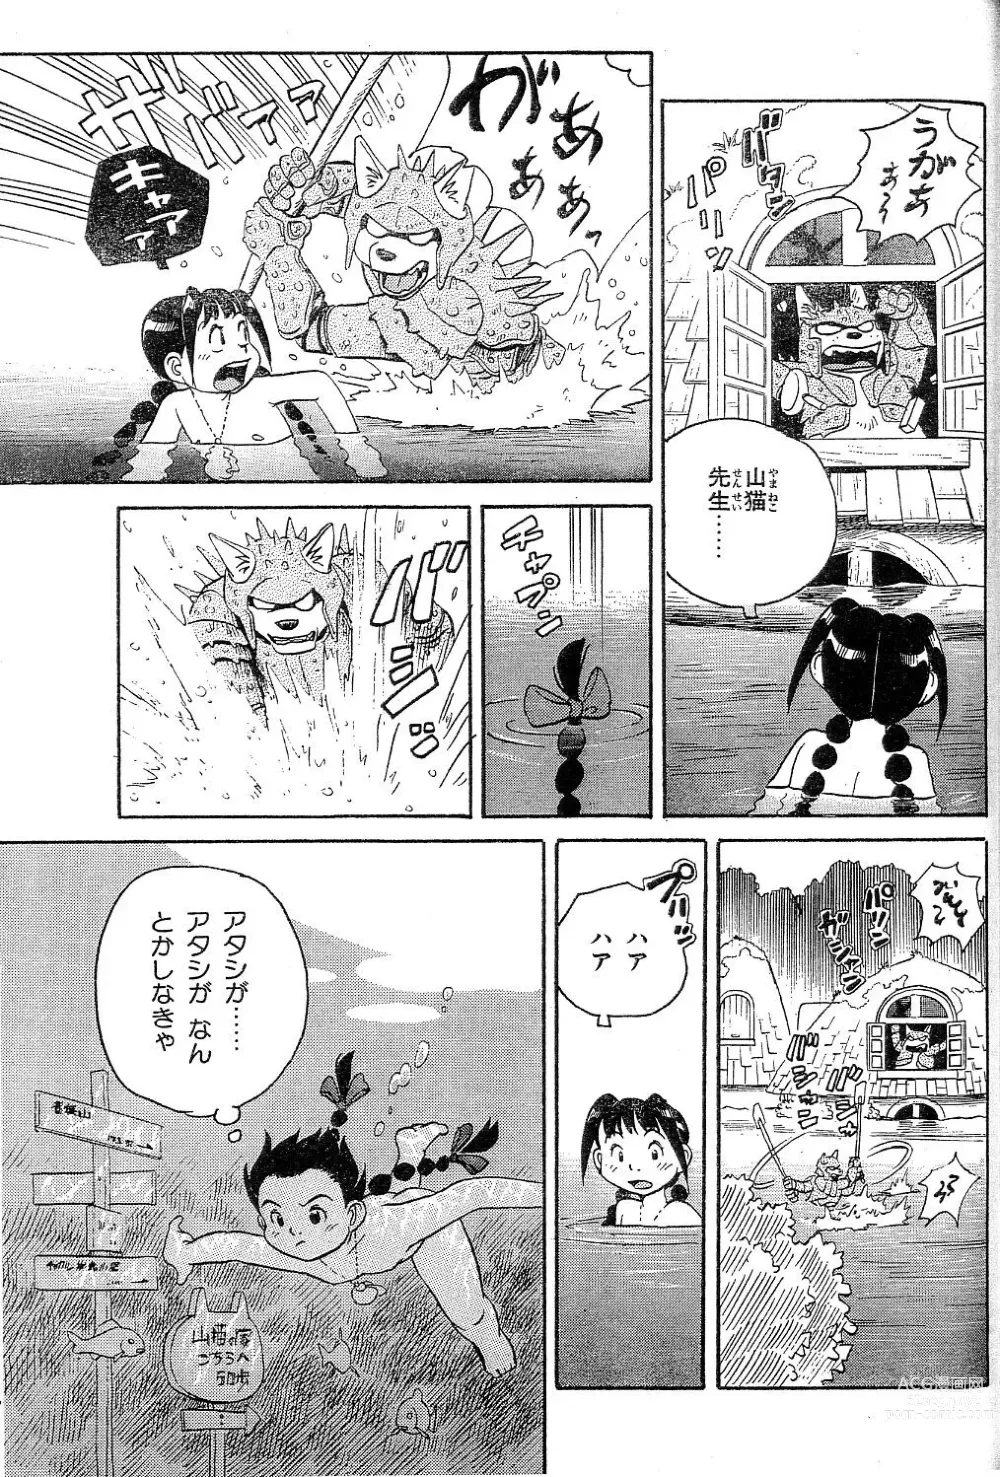 Page 1 of manga Yamaneko-sensei no Monogatari